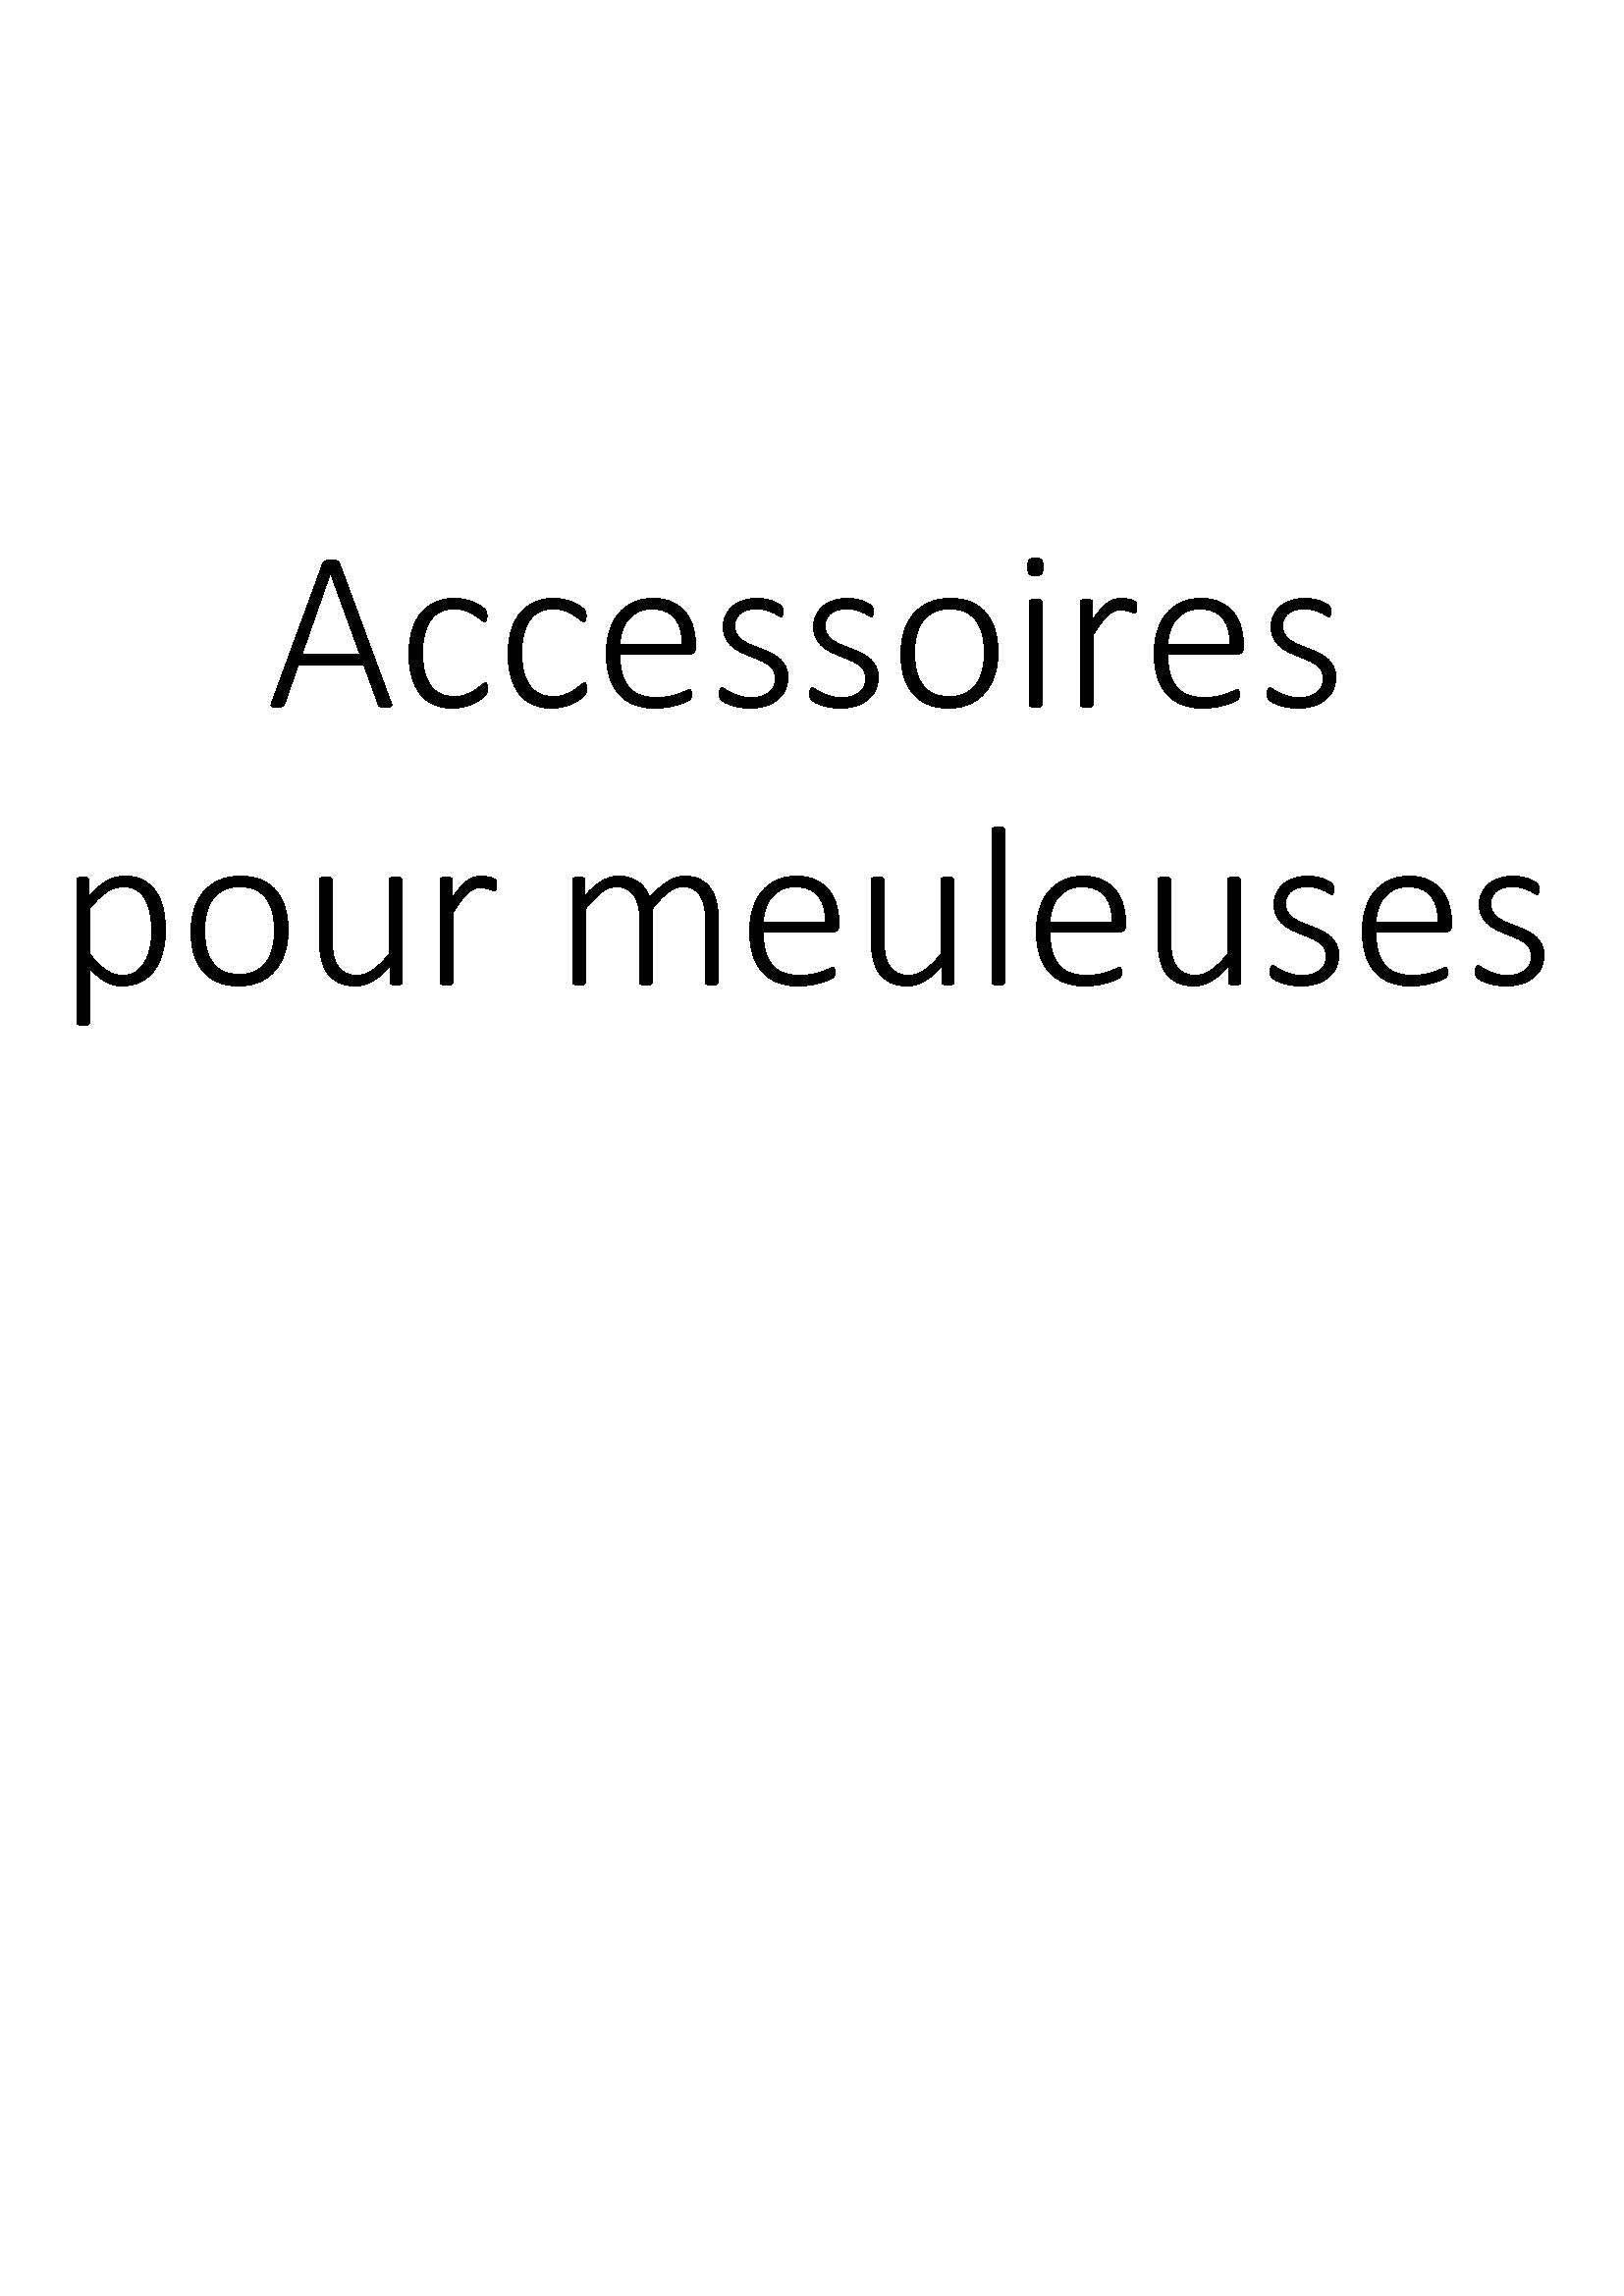 Accessoires pour meuleuses clicktofournisseur.com